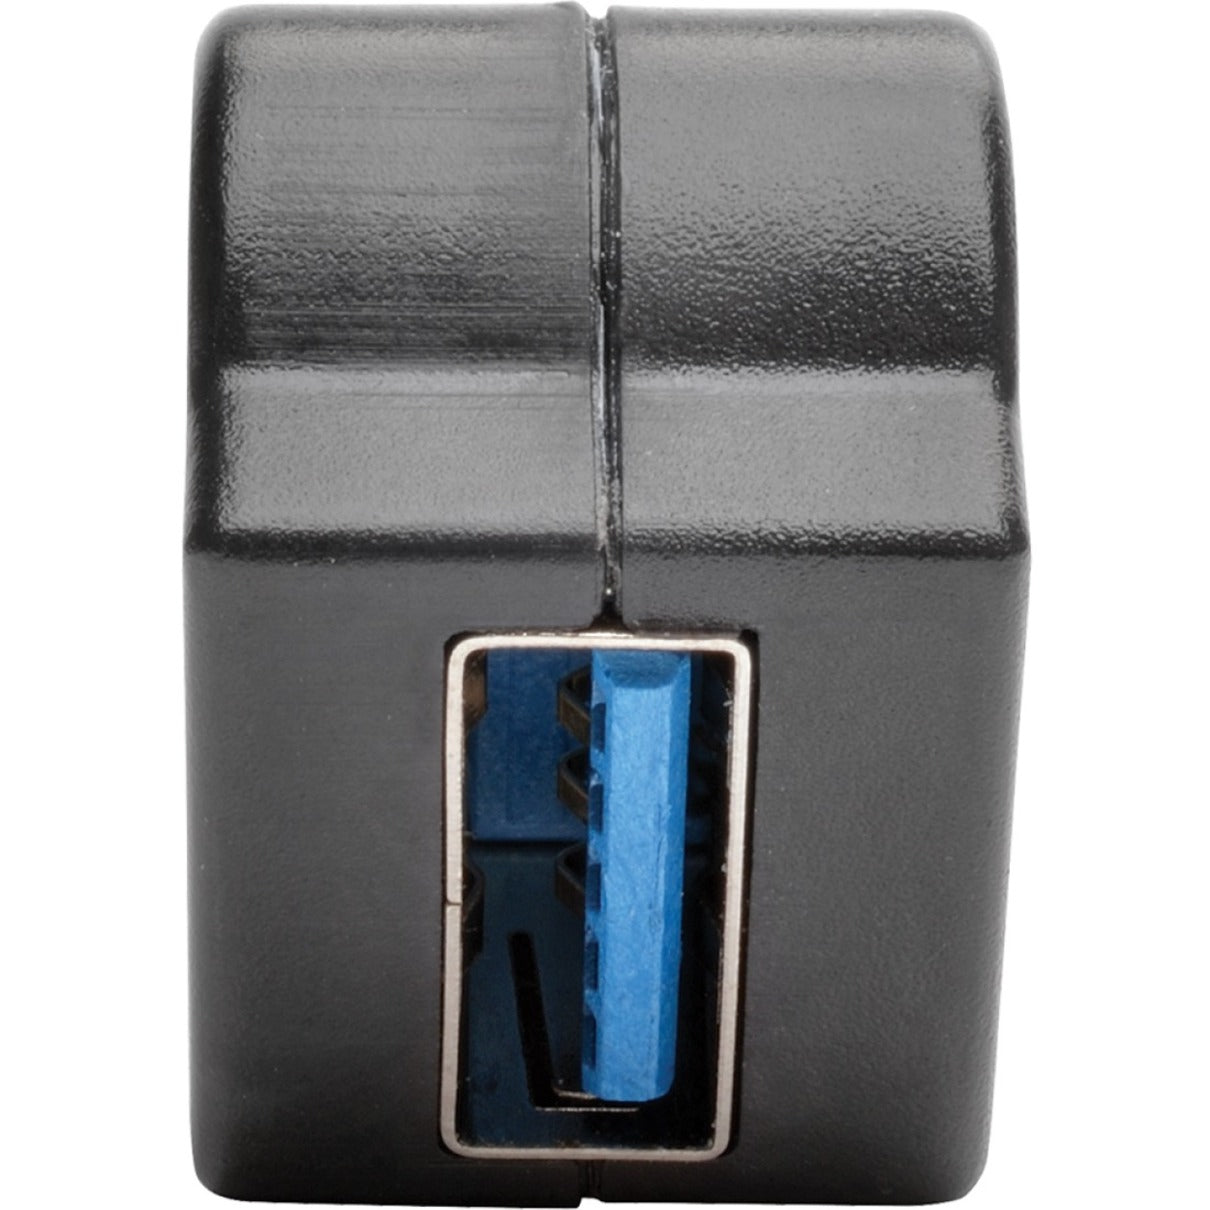 تريب لايت U325-000-KPA-BK USB 3.0 الكل-في-واحد كيستون / لوحة تركيب أنجلد كوبلر (أنثى / أنثى)، أسود